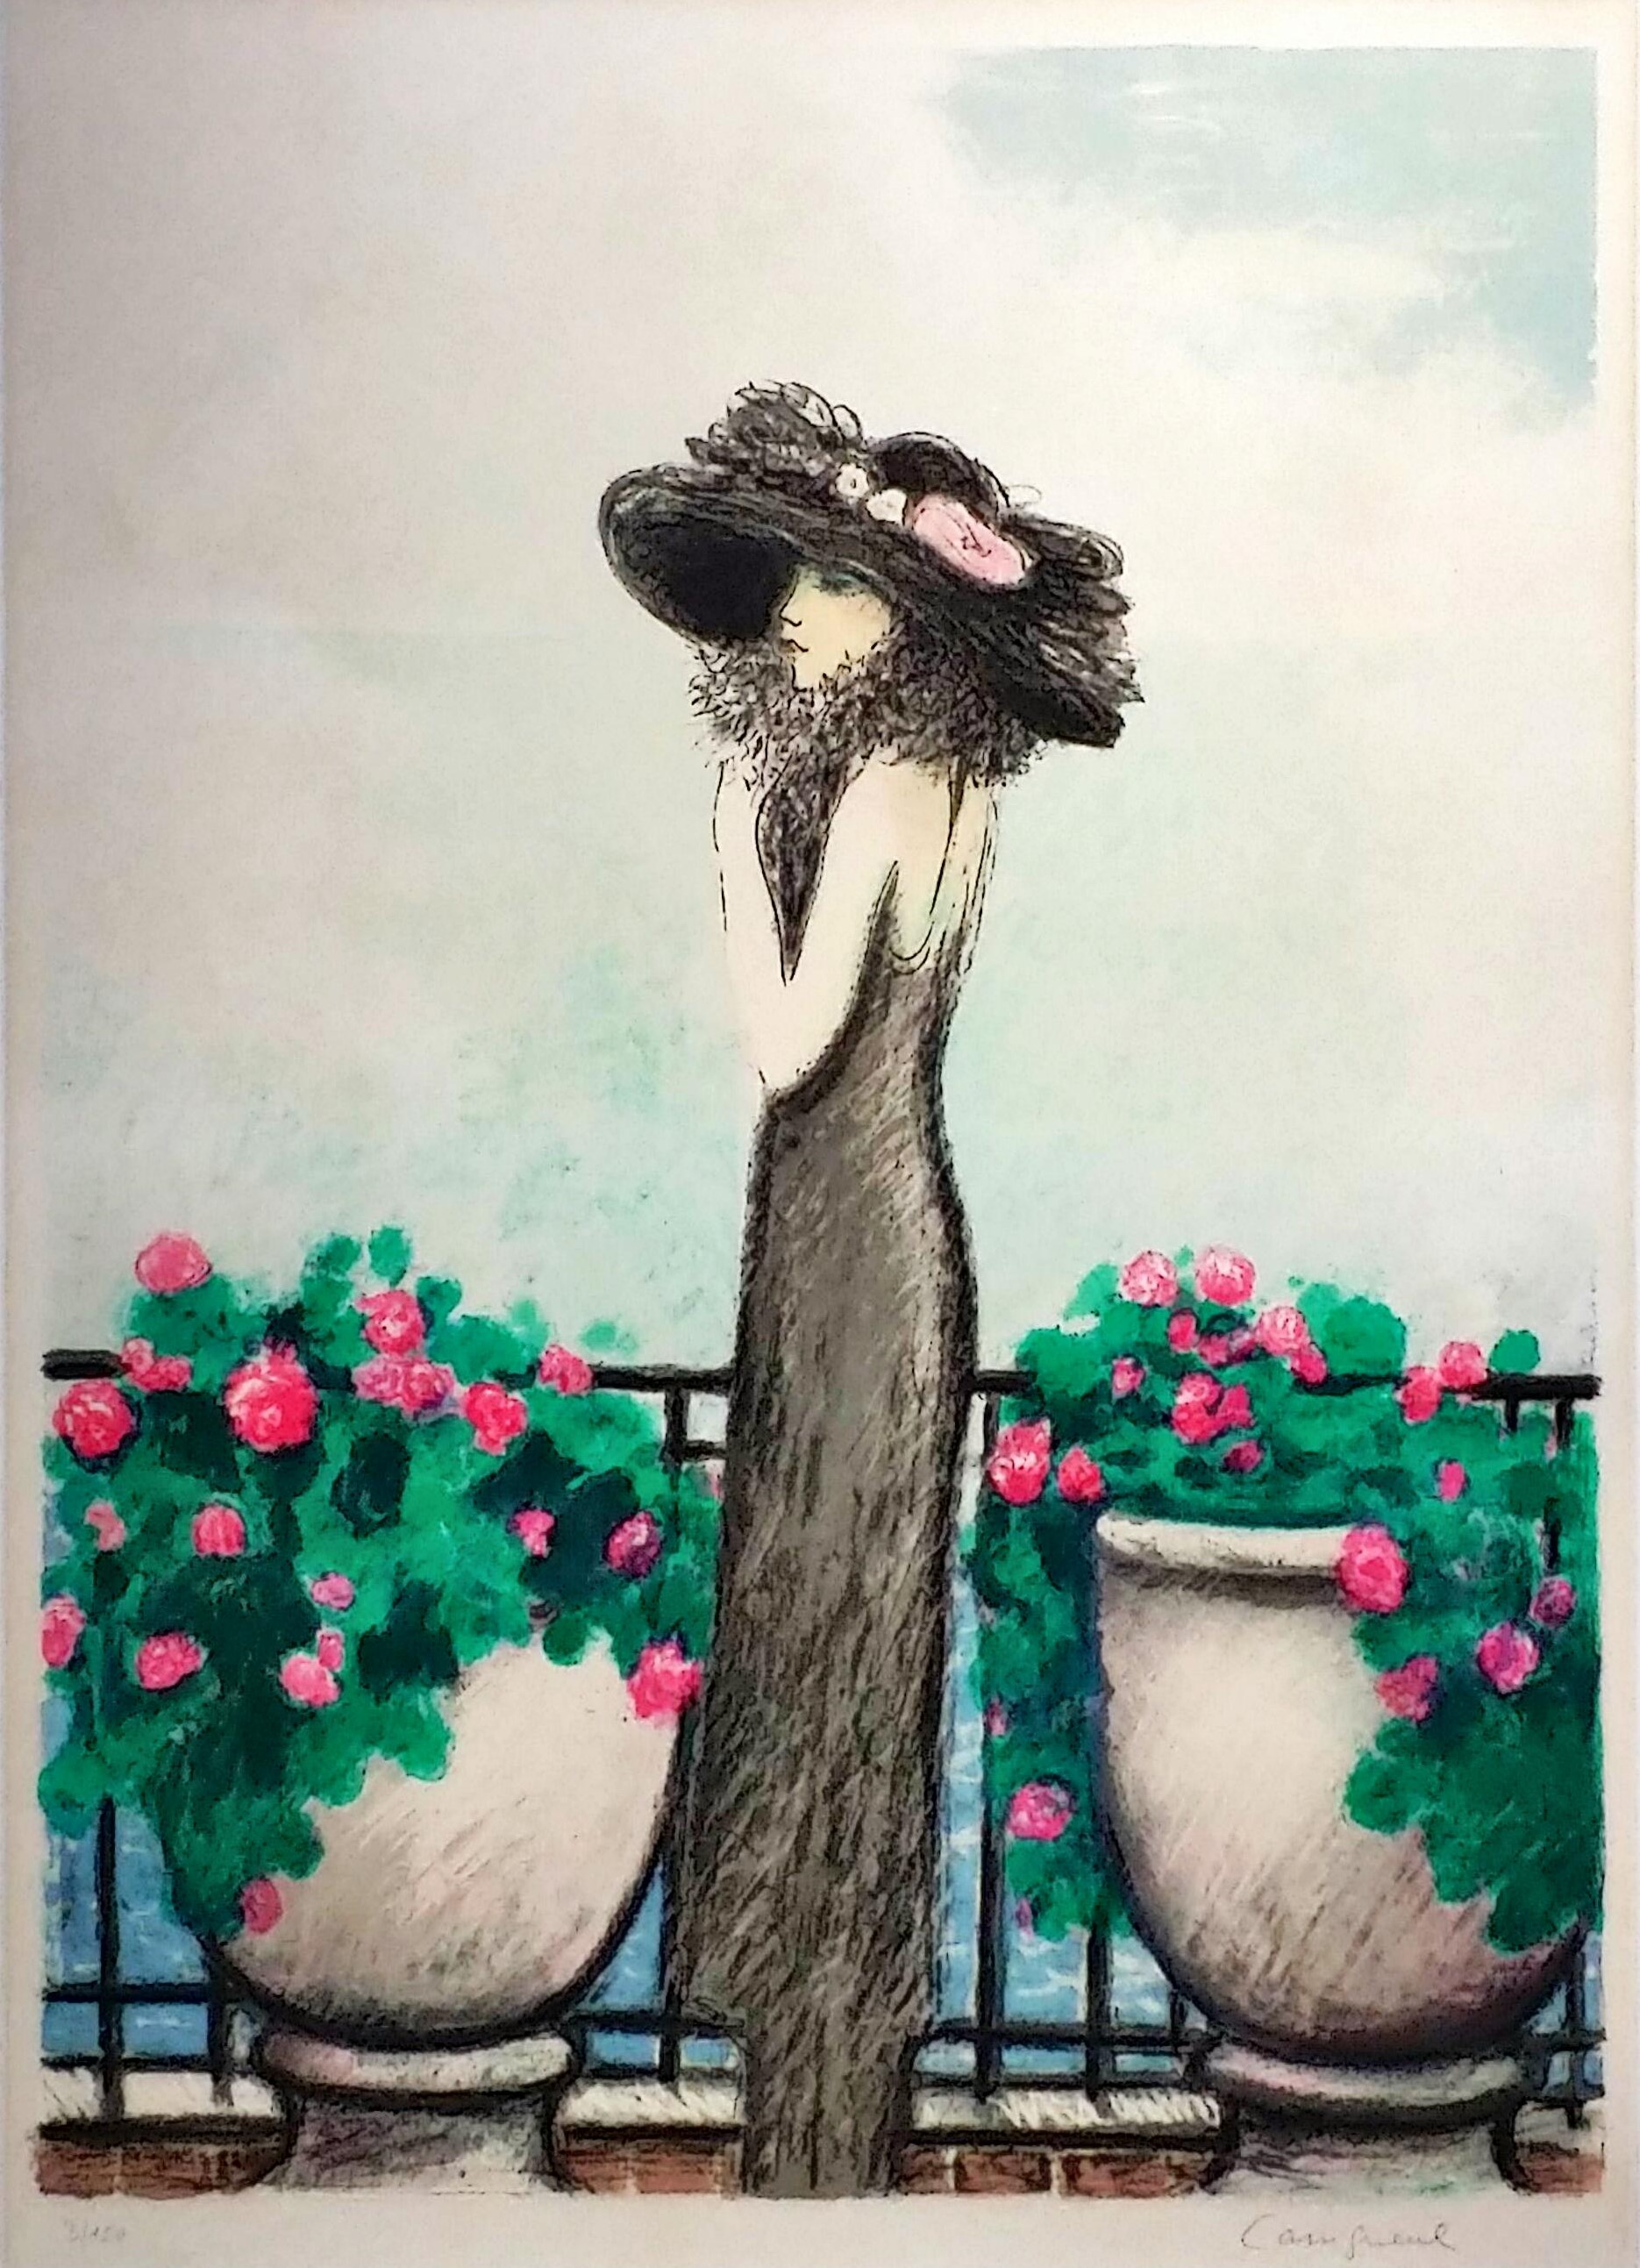 特価超激得真作保証 ジャン＝ピエール・カシニョール リトグラフ「飾り帽子のプロフィール」画寸 23.5cm×31.5cm 仏画壇重鎮 甘美で優雅な女性像 5052 石版画、リトグラフ